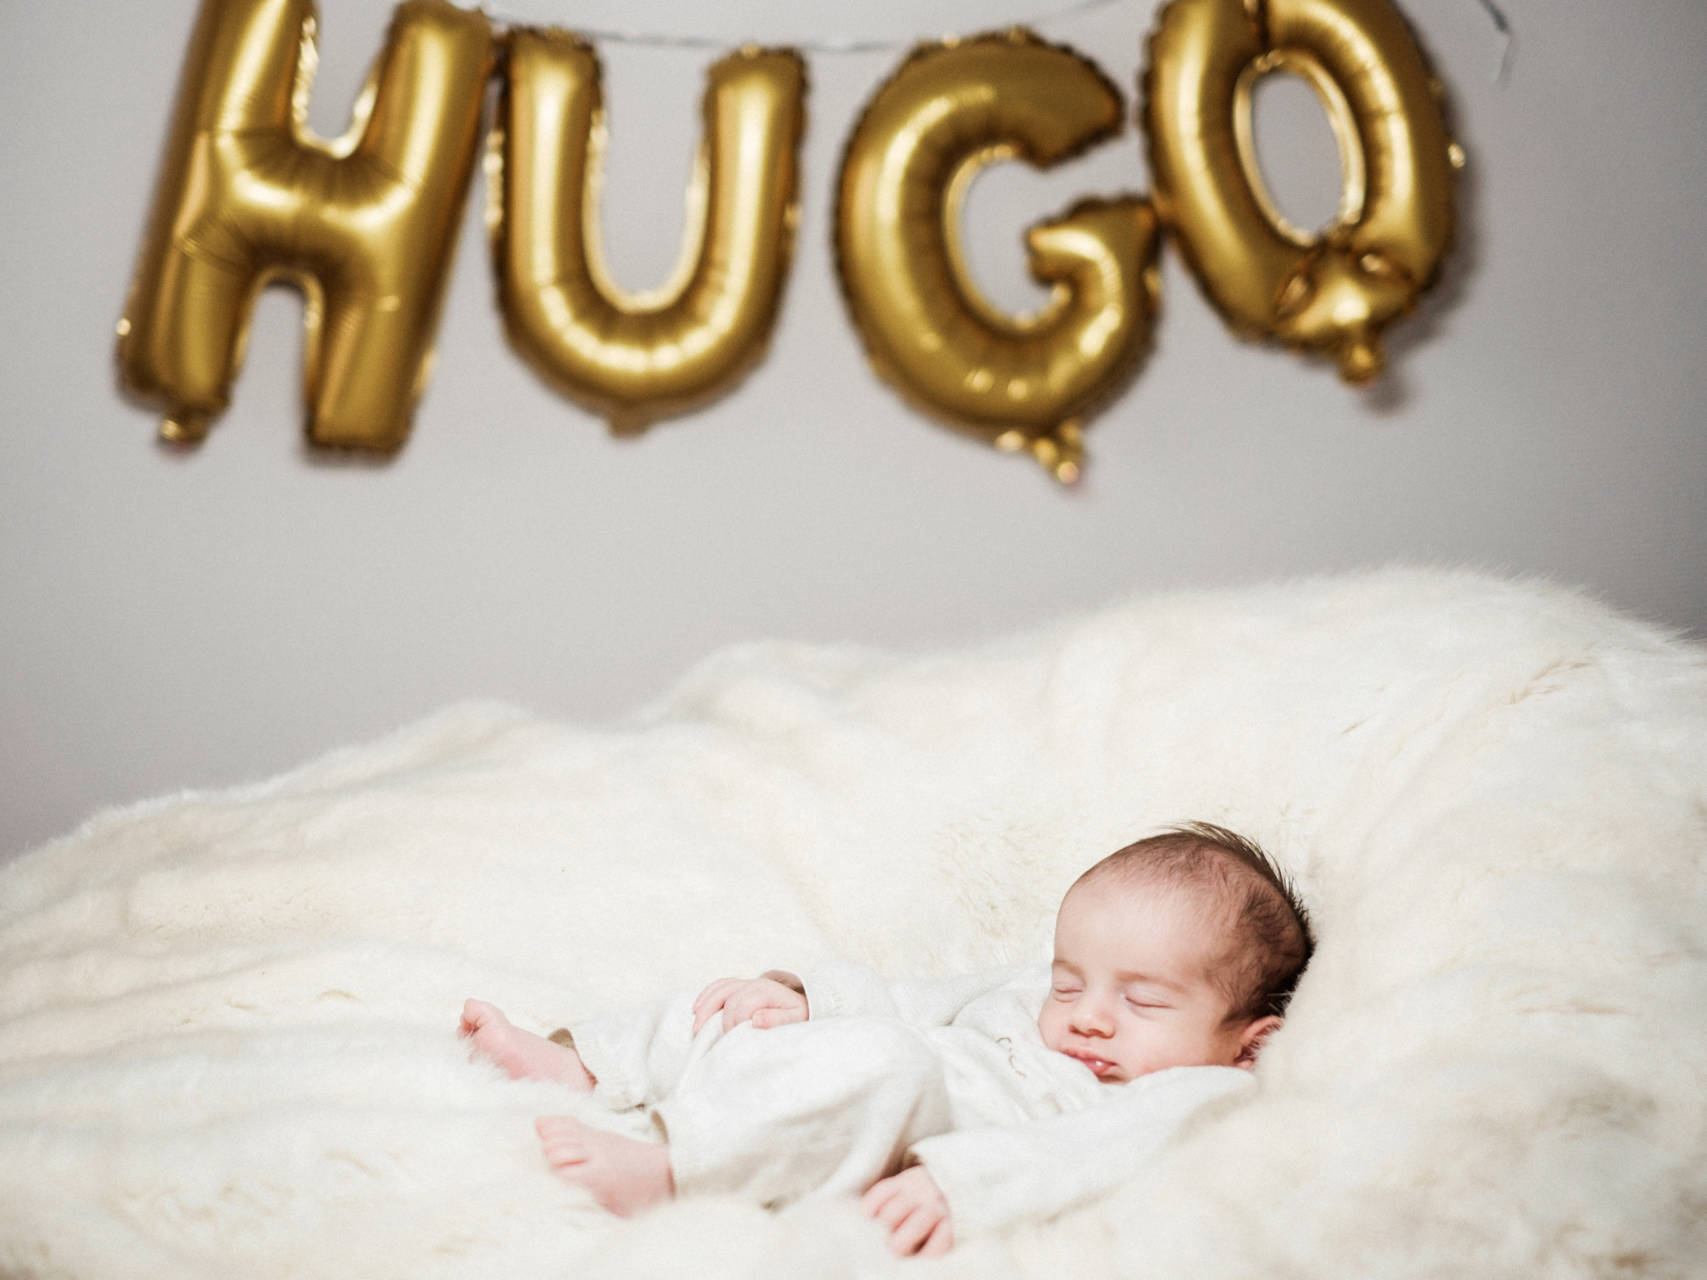 Little Hugo